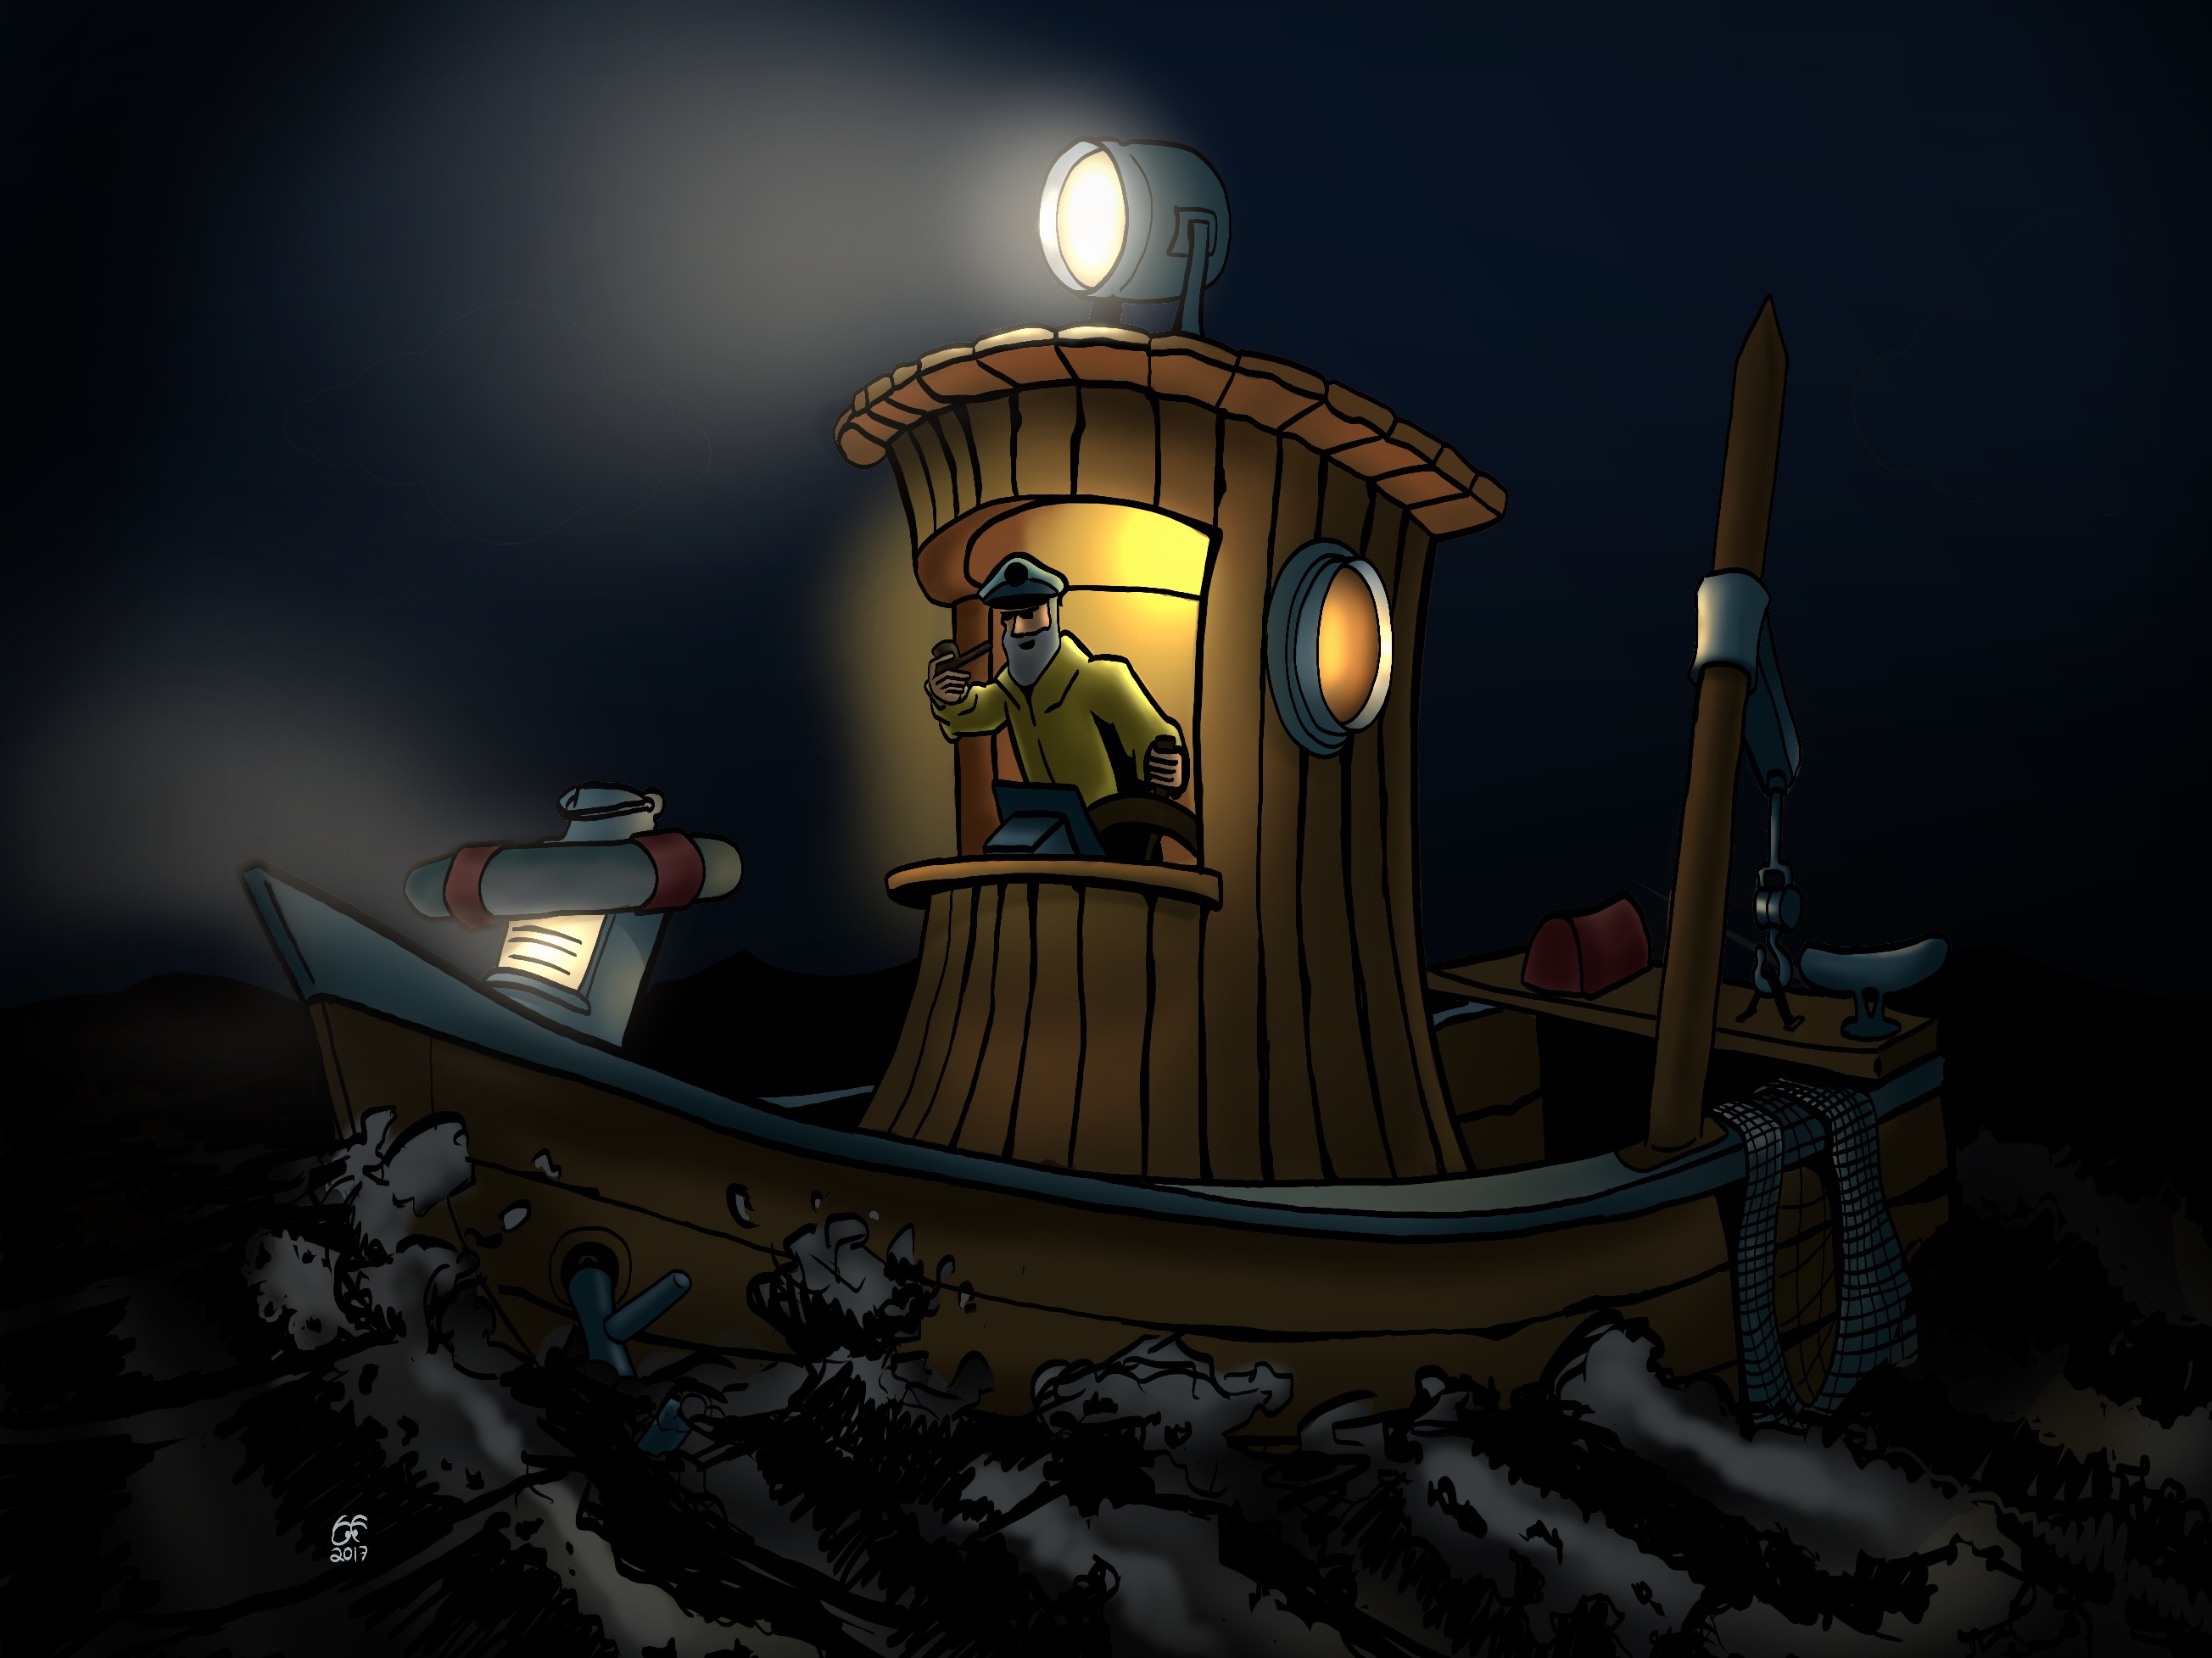 An illustration of a small fishing boat sailing at night.